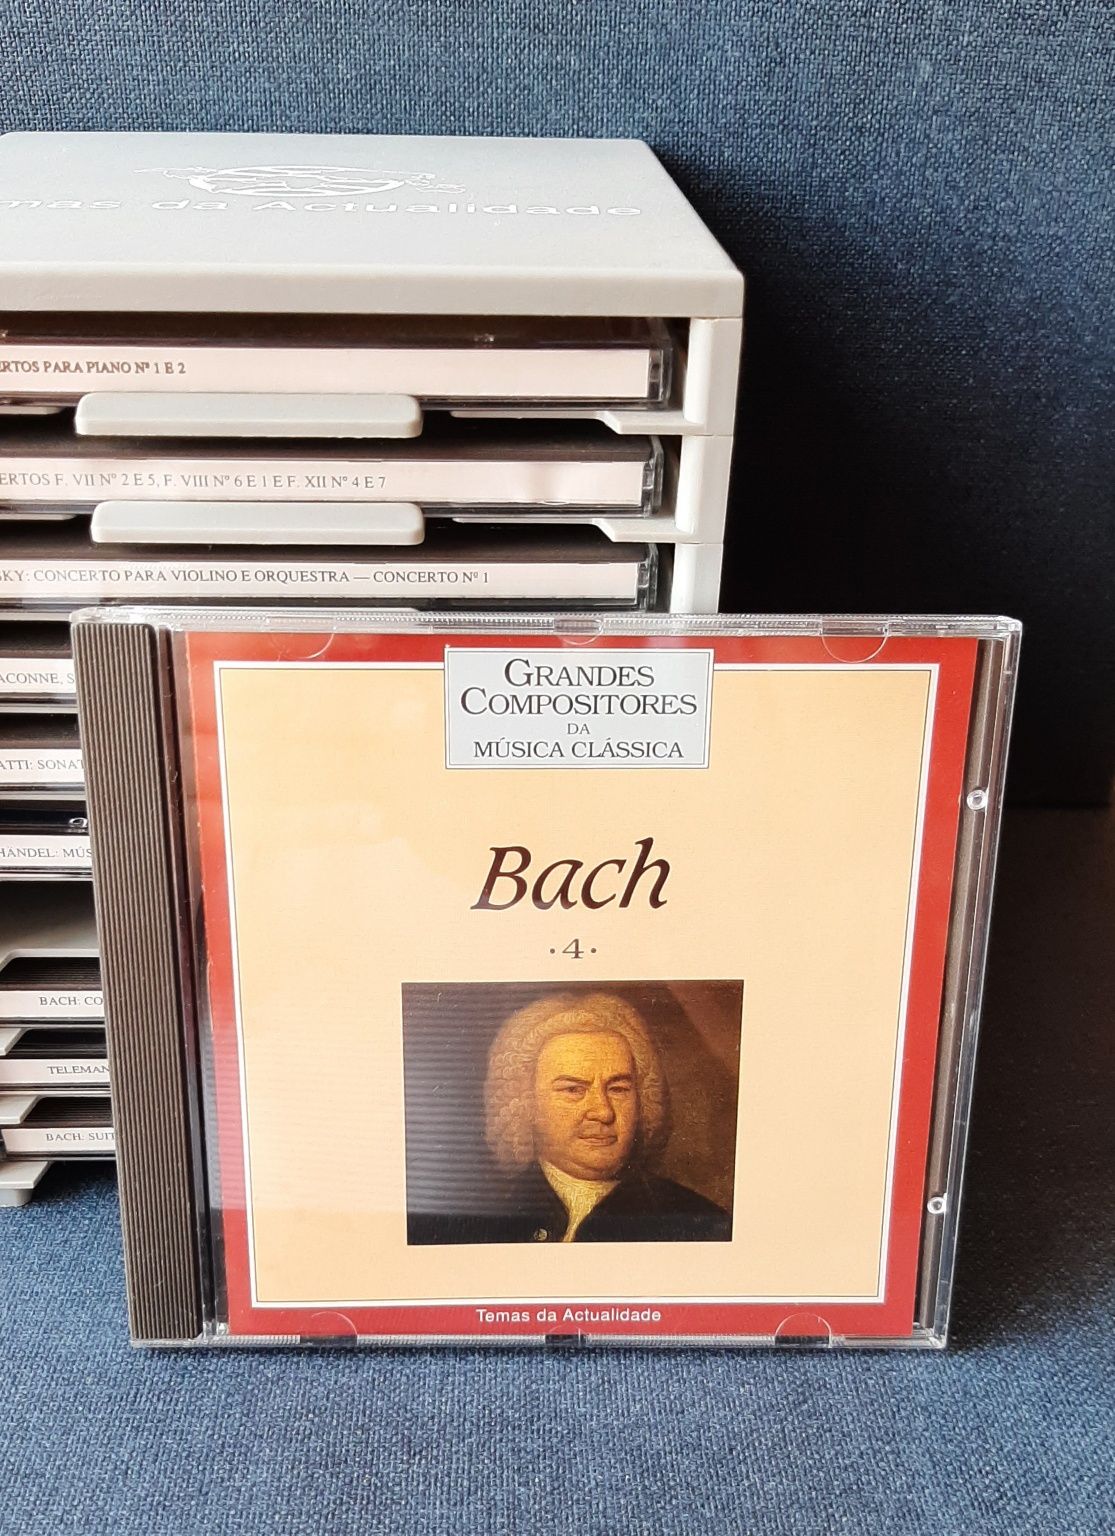 Colecção de 10 CDs de música clássica